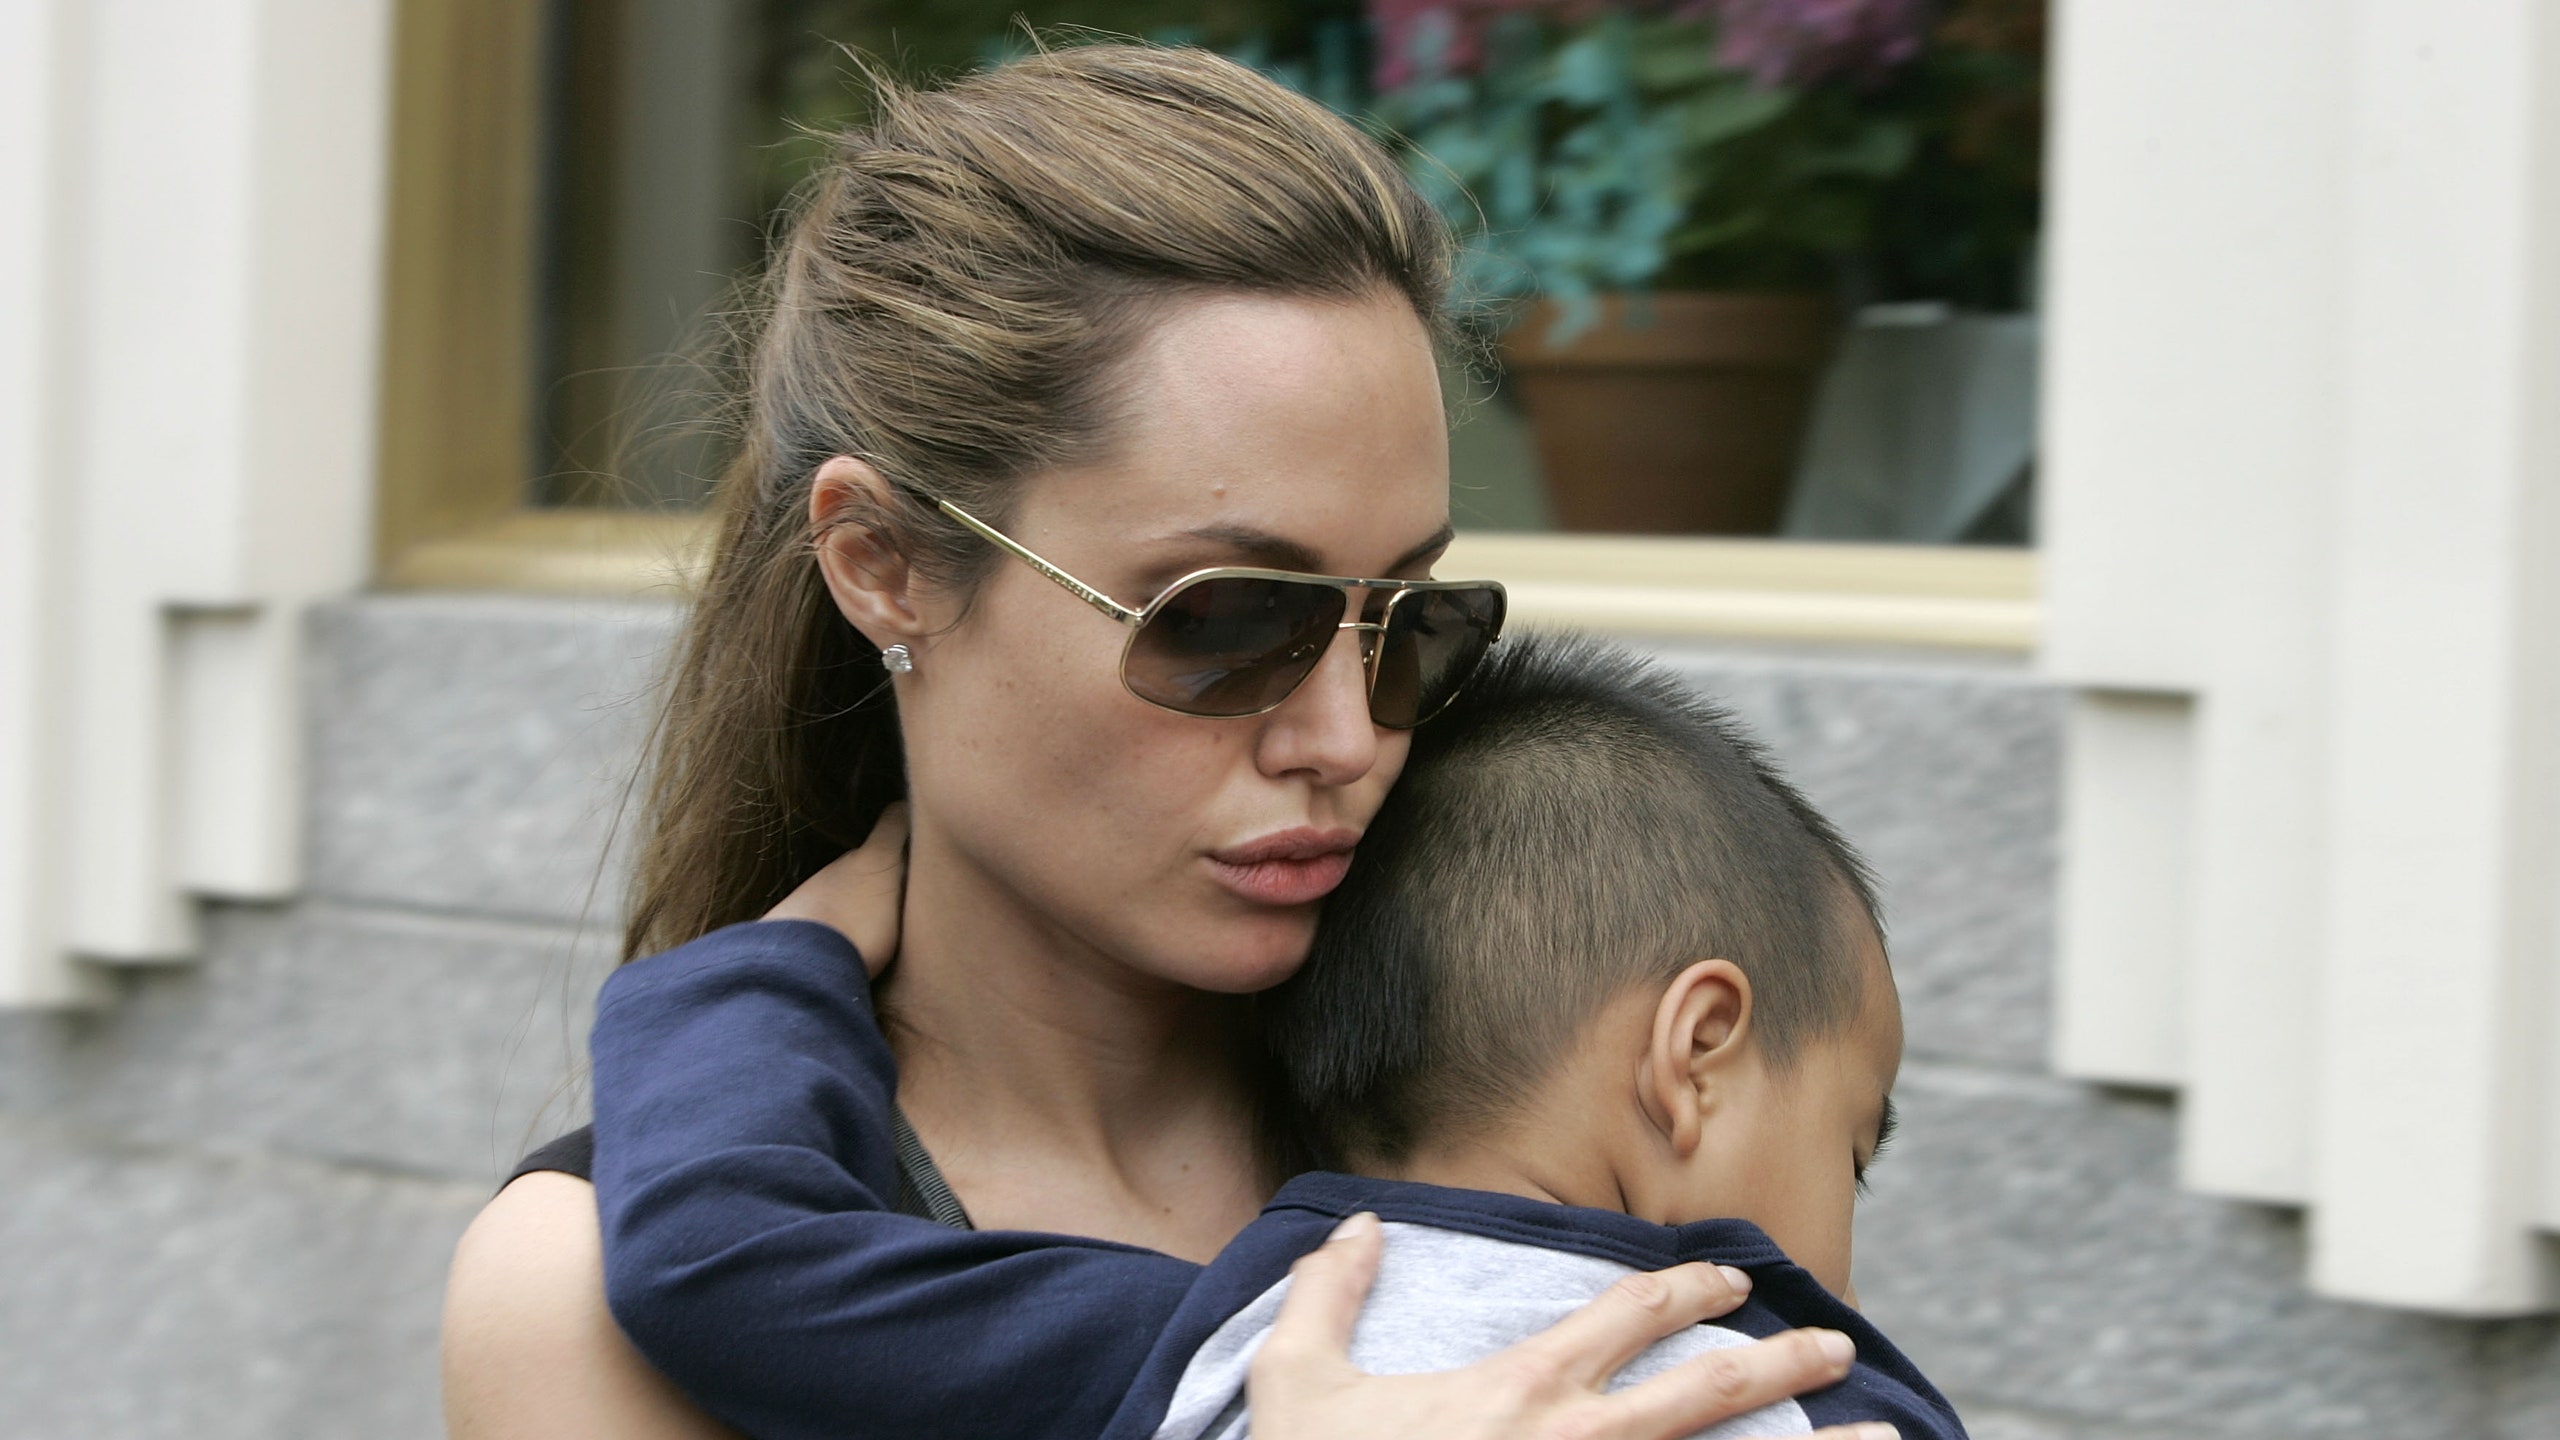 Анджелина Джоли планирует усыновить еще одного ребенка вместе с британским миллиардером | Glamour